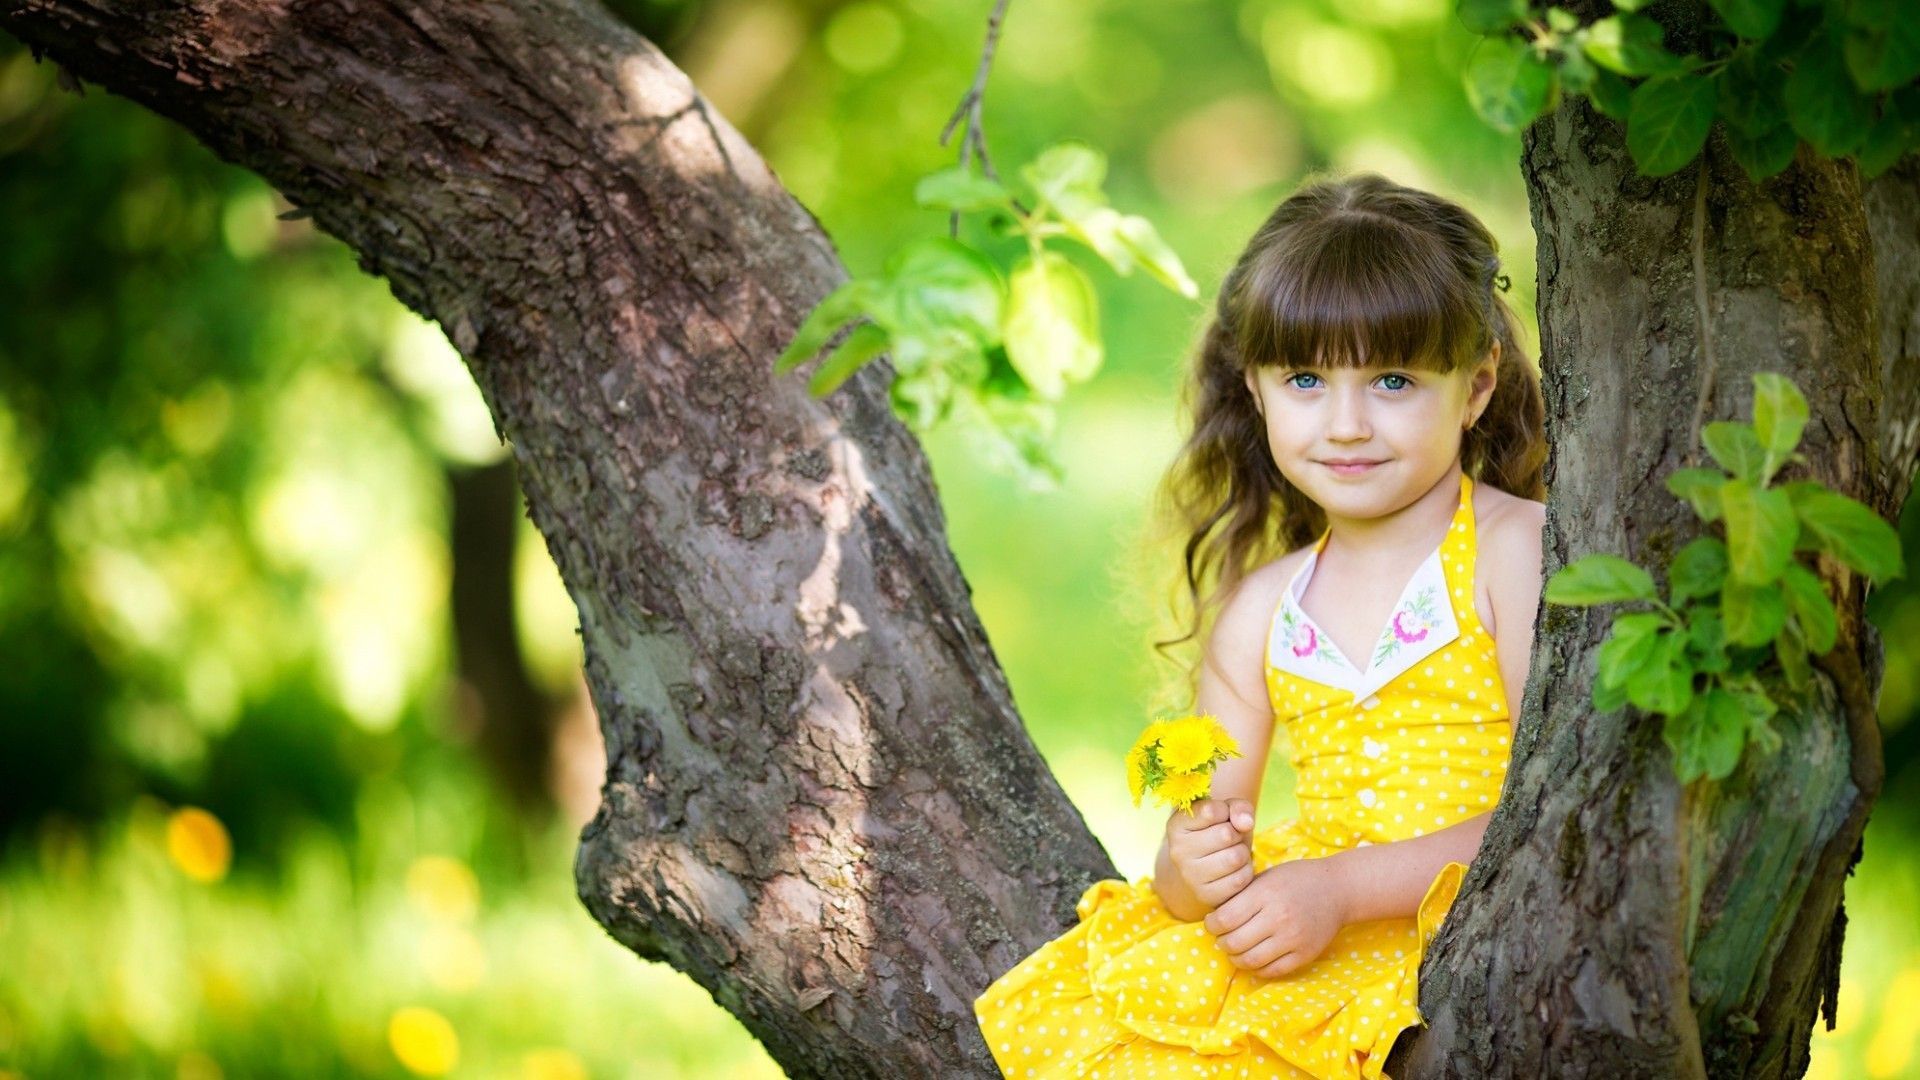 Lovely Girl In Yellow Dress. Baby girl wallpaper, Cute baby girl wallpaper, Cute girl wallpaper